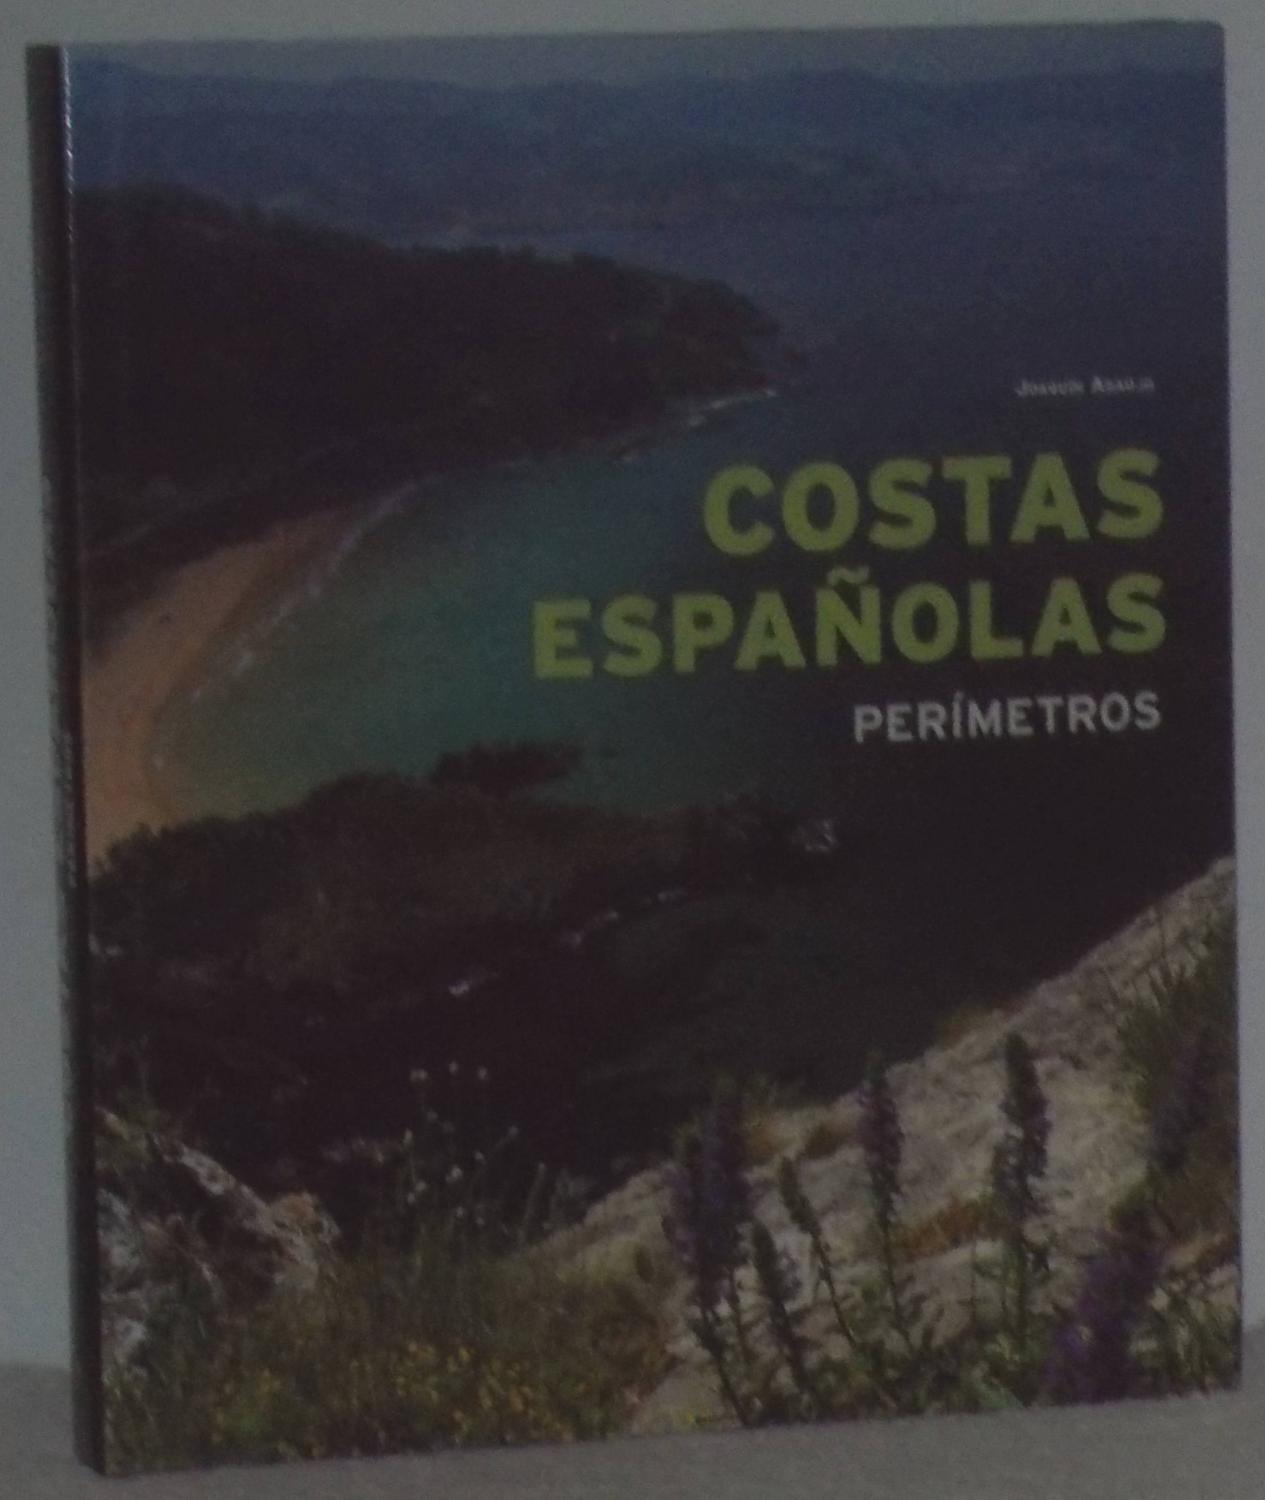 Costas españolas. Perímetros - Araújo, Joaquín - Prieto, Fernando